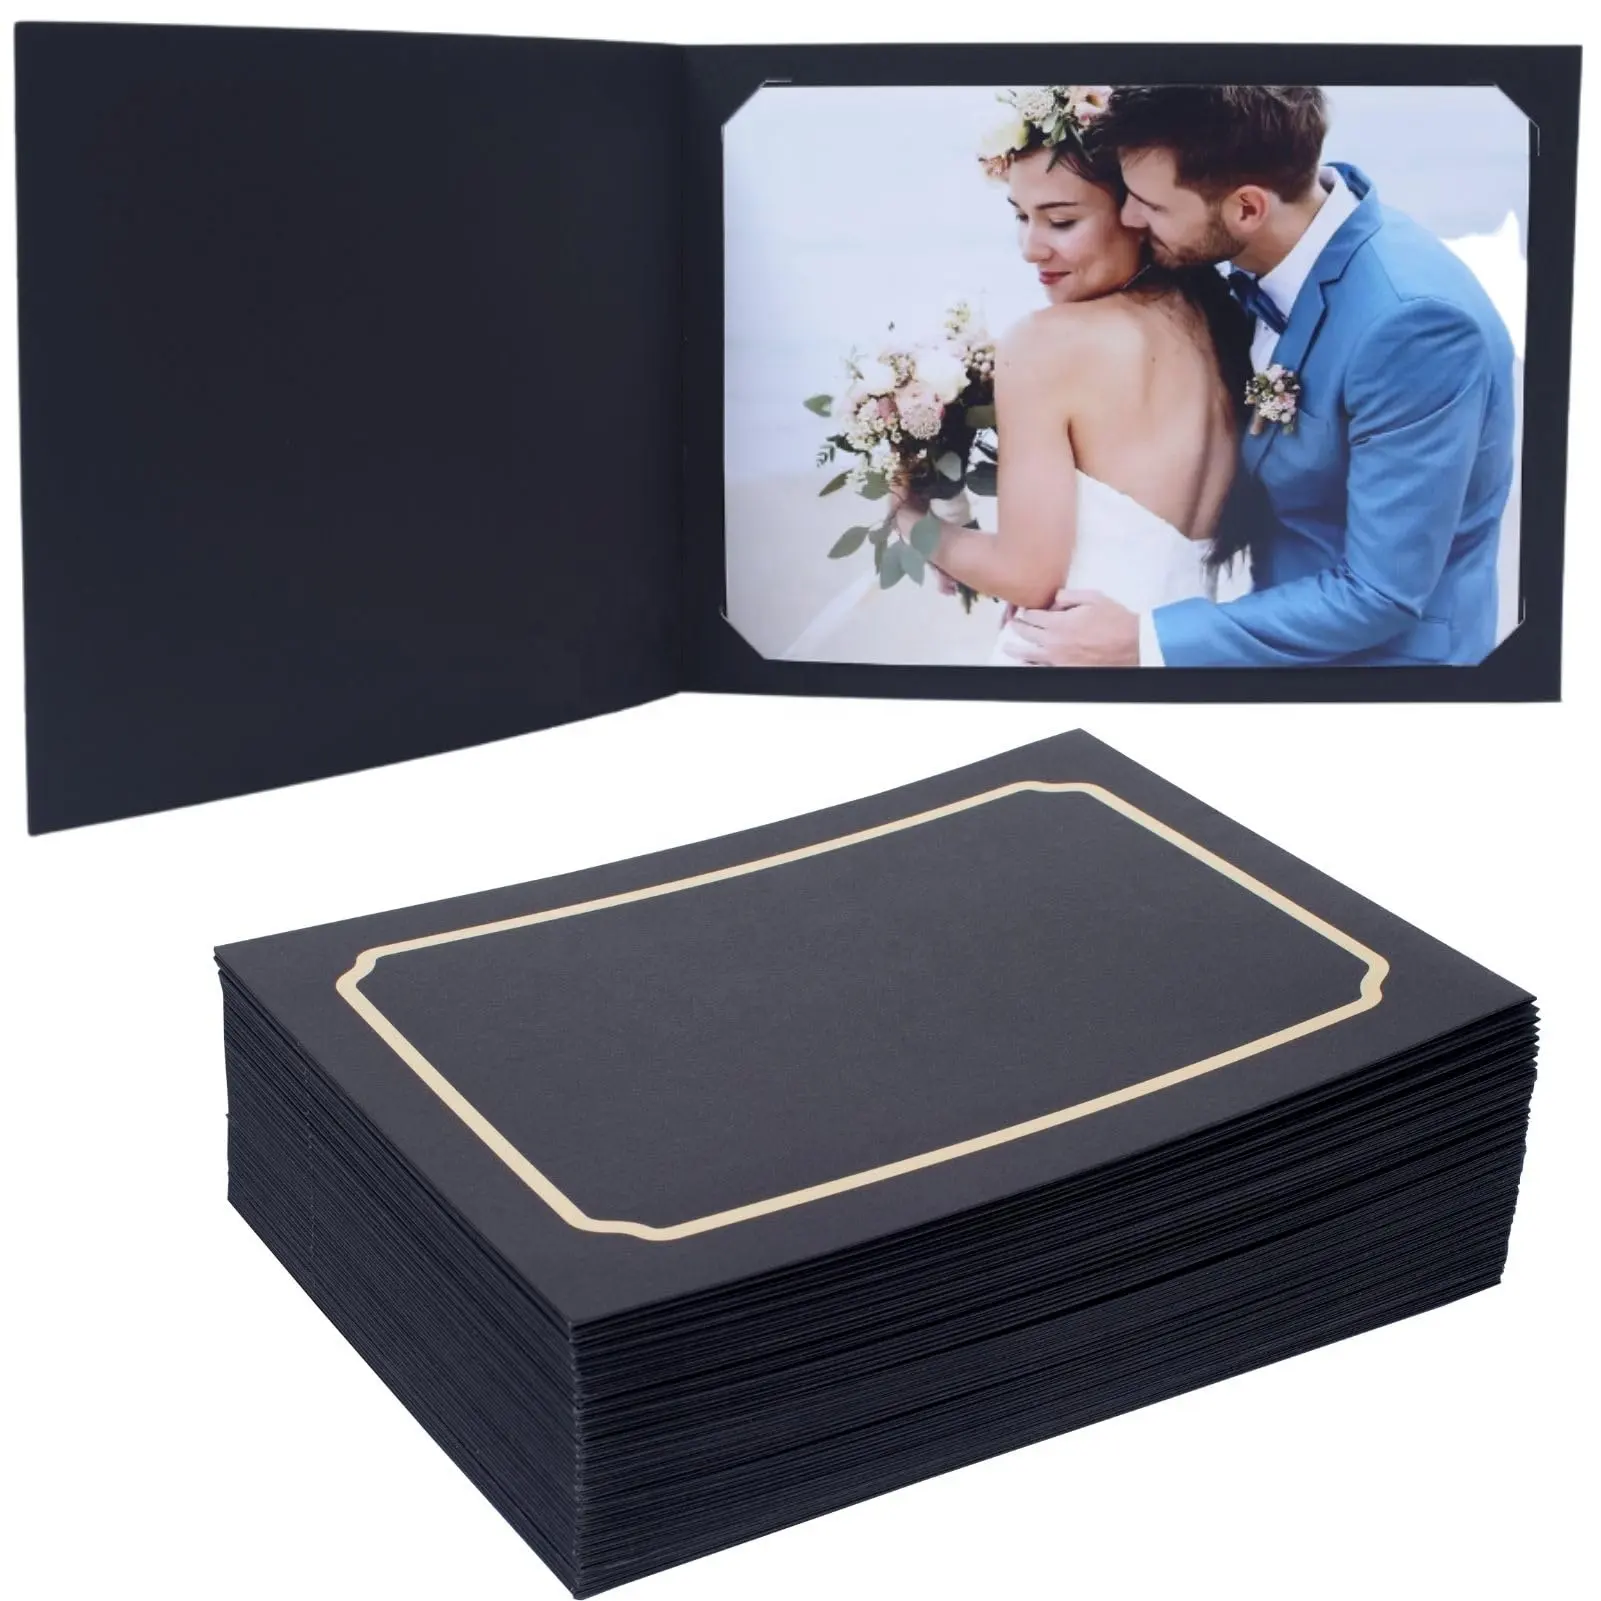 Haki renkli fotoğraf klasörü için 4 "* 6" veya 5 "* 7" kağıt fotoğraf çerçeveleri, asitsiz karton resim çerçevesi, düğünler için harika, doğum günü